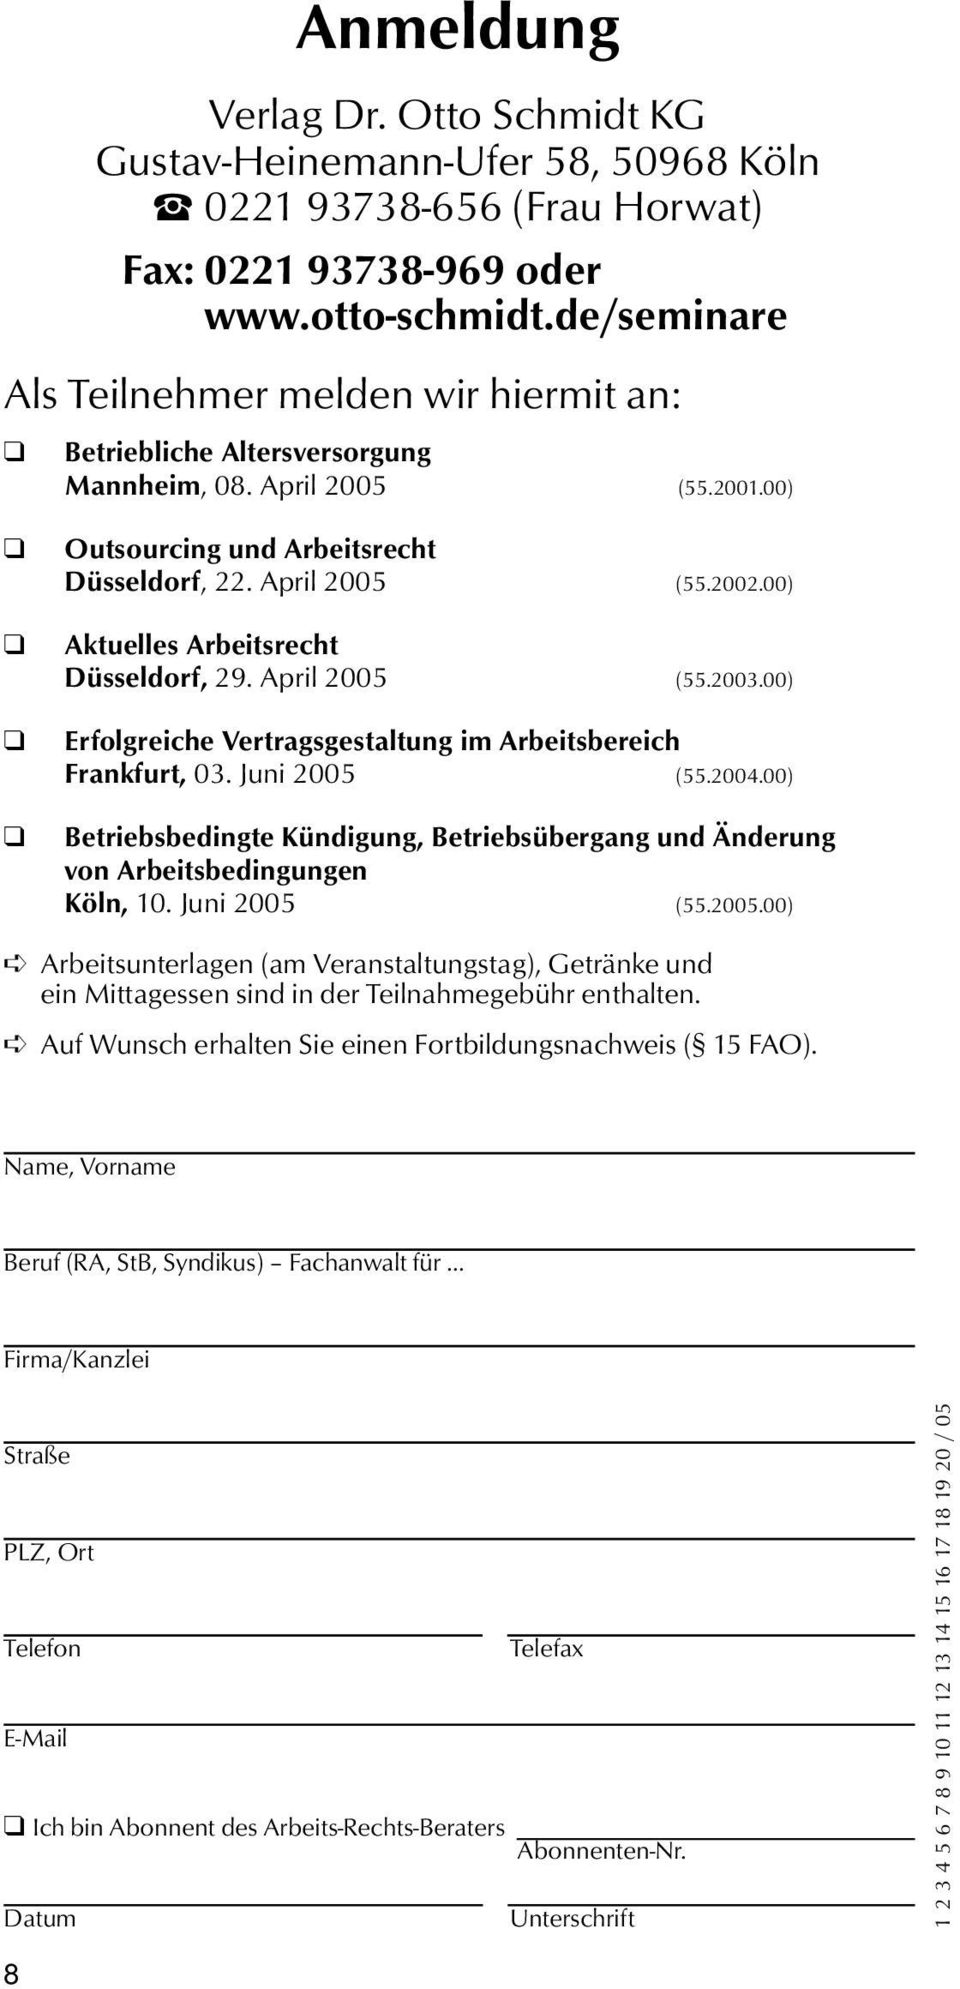 00) Aktuelles Arbeitsrecht Düsseldorf, 29. April 2005 (55.2003.00) Erfolgreiche Vertragsgestaltung im Arbeitsbereich Frankfurt, 03. Juni 2005 (55.2004.